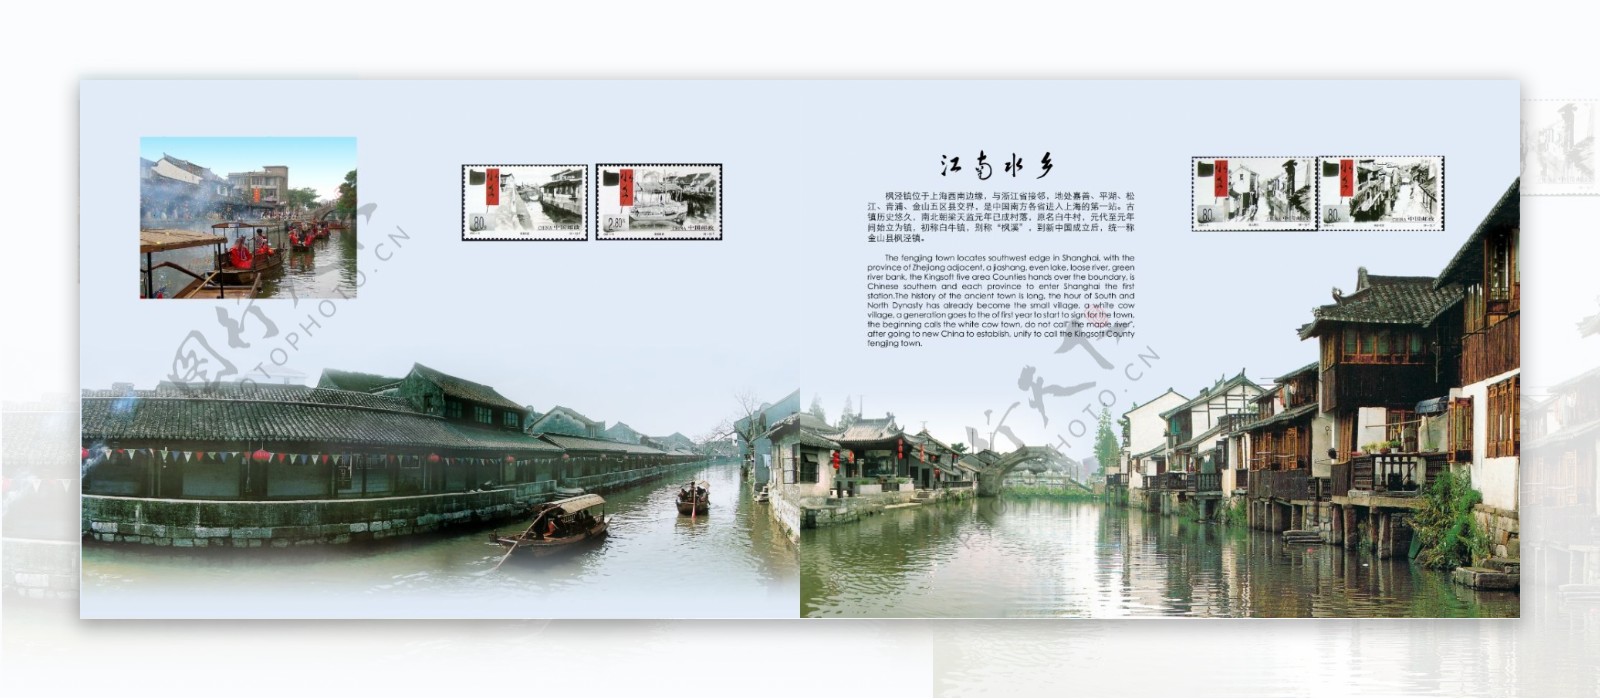 枫泾古镇画册内页图片